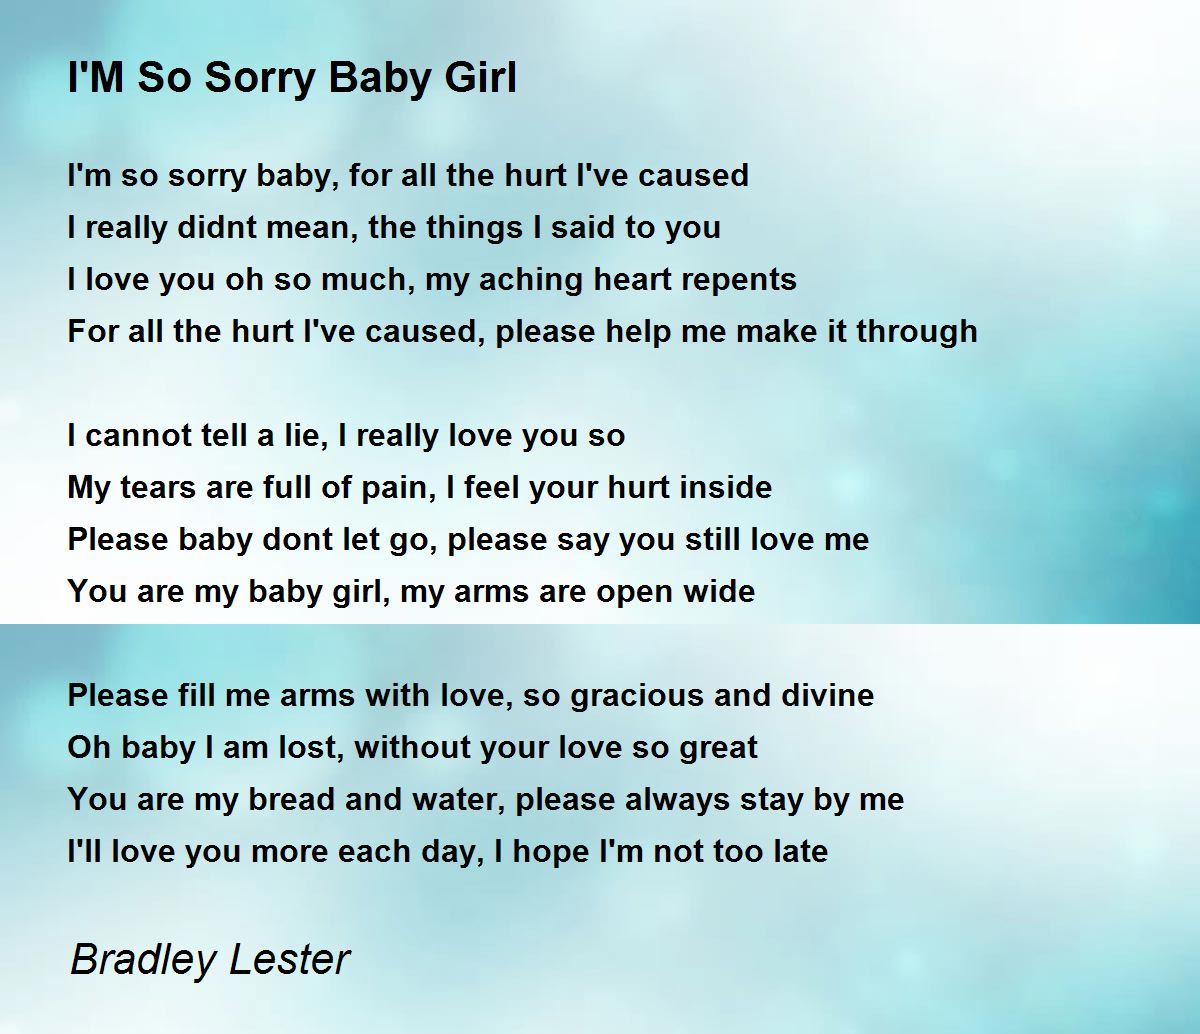 I M So Sorry Baby Girl By Bradley Lester I M So Sorry Baby Girl Poem